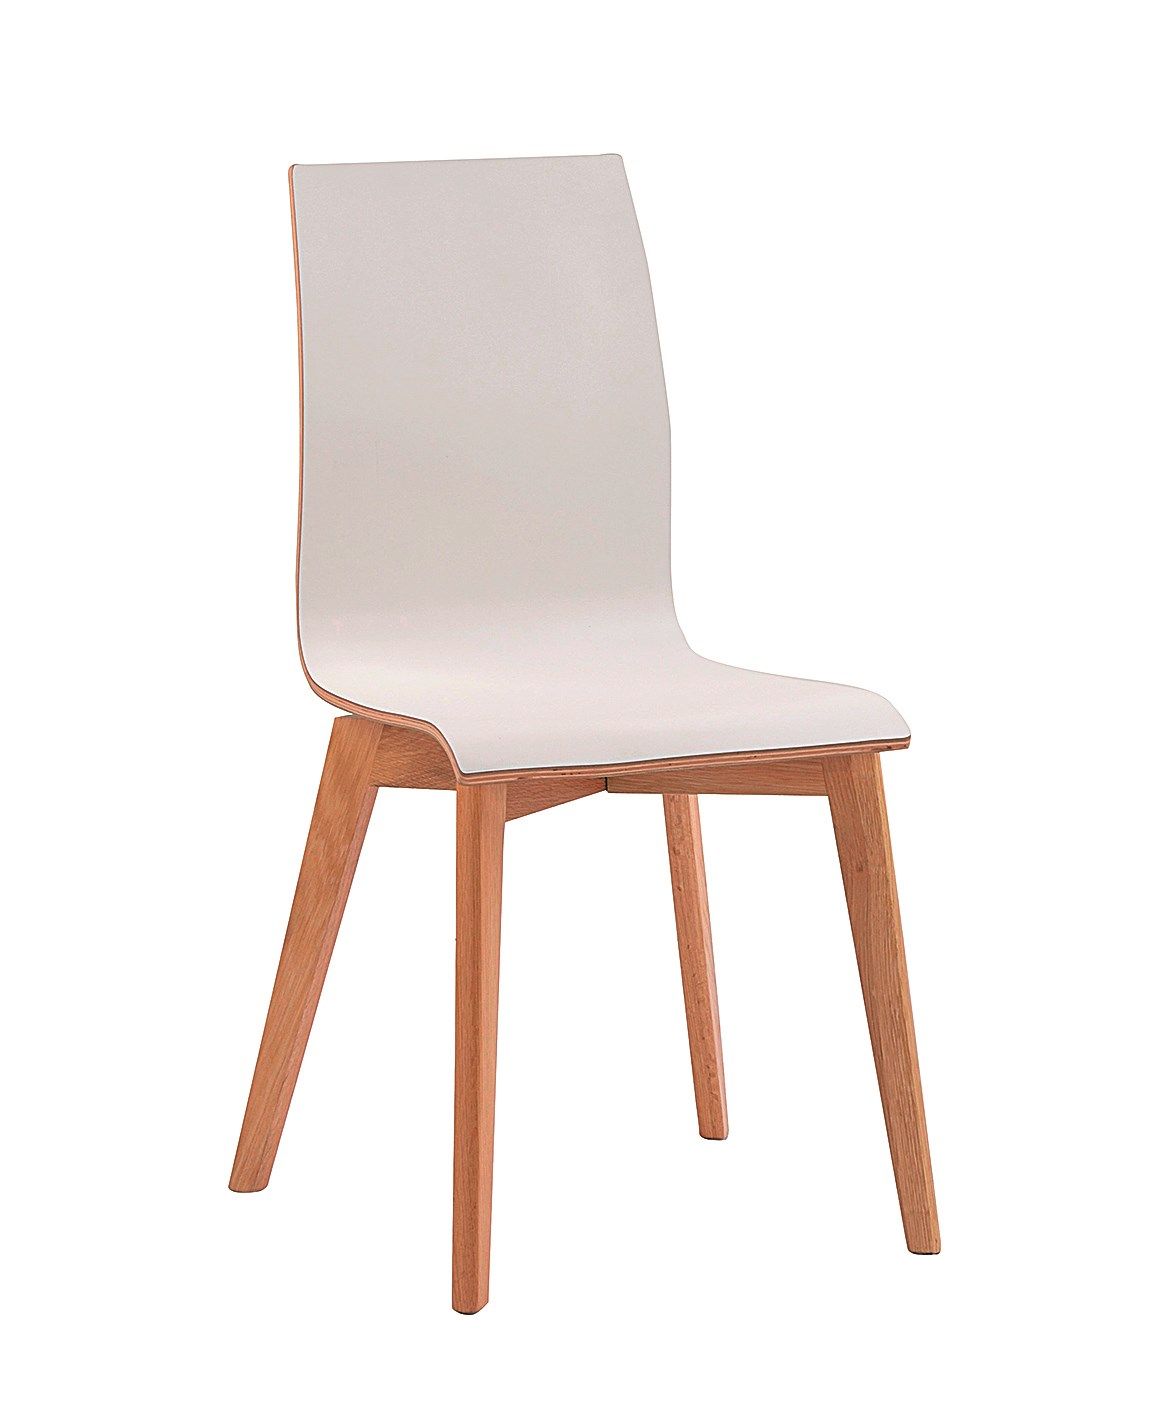 Šedá sametová jídelní židle Chair Morgan Grey - 45*54*86cm J-Line by Jolipa - MUJ HOUSE.cz